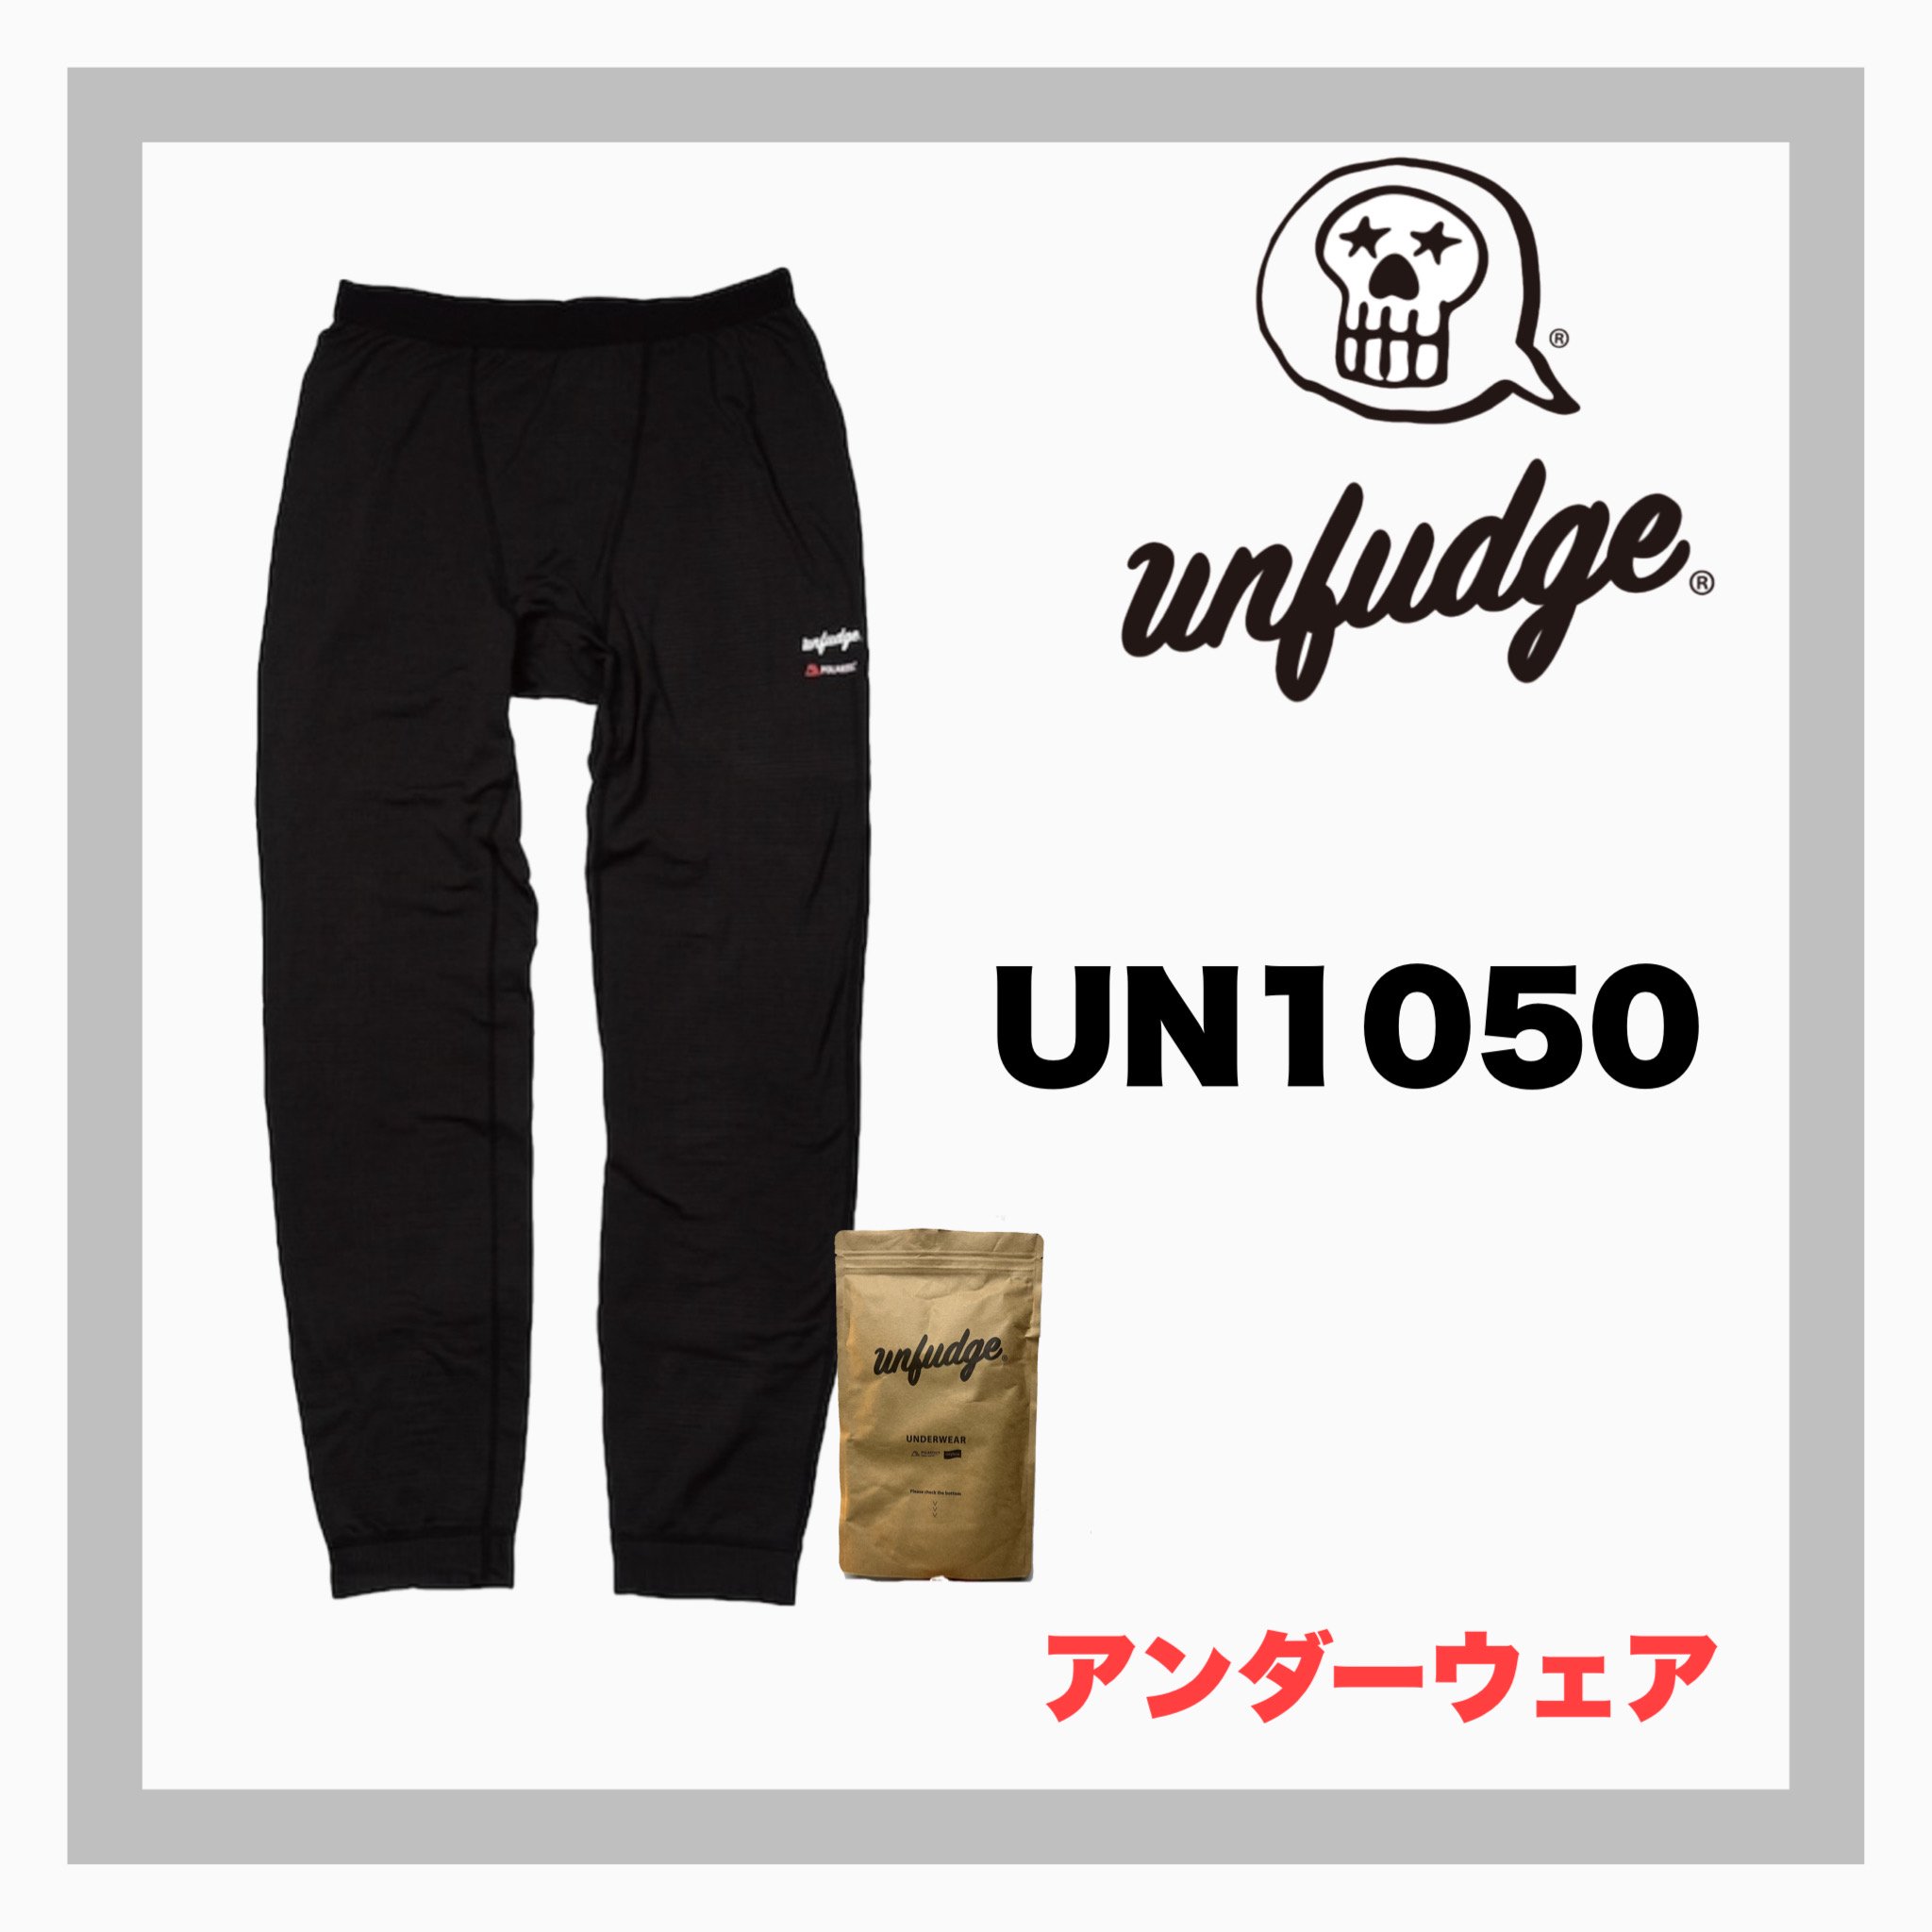 unfudge【 UN1050 Bottom Underwear / BLACK】 - JOINT HOUSE